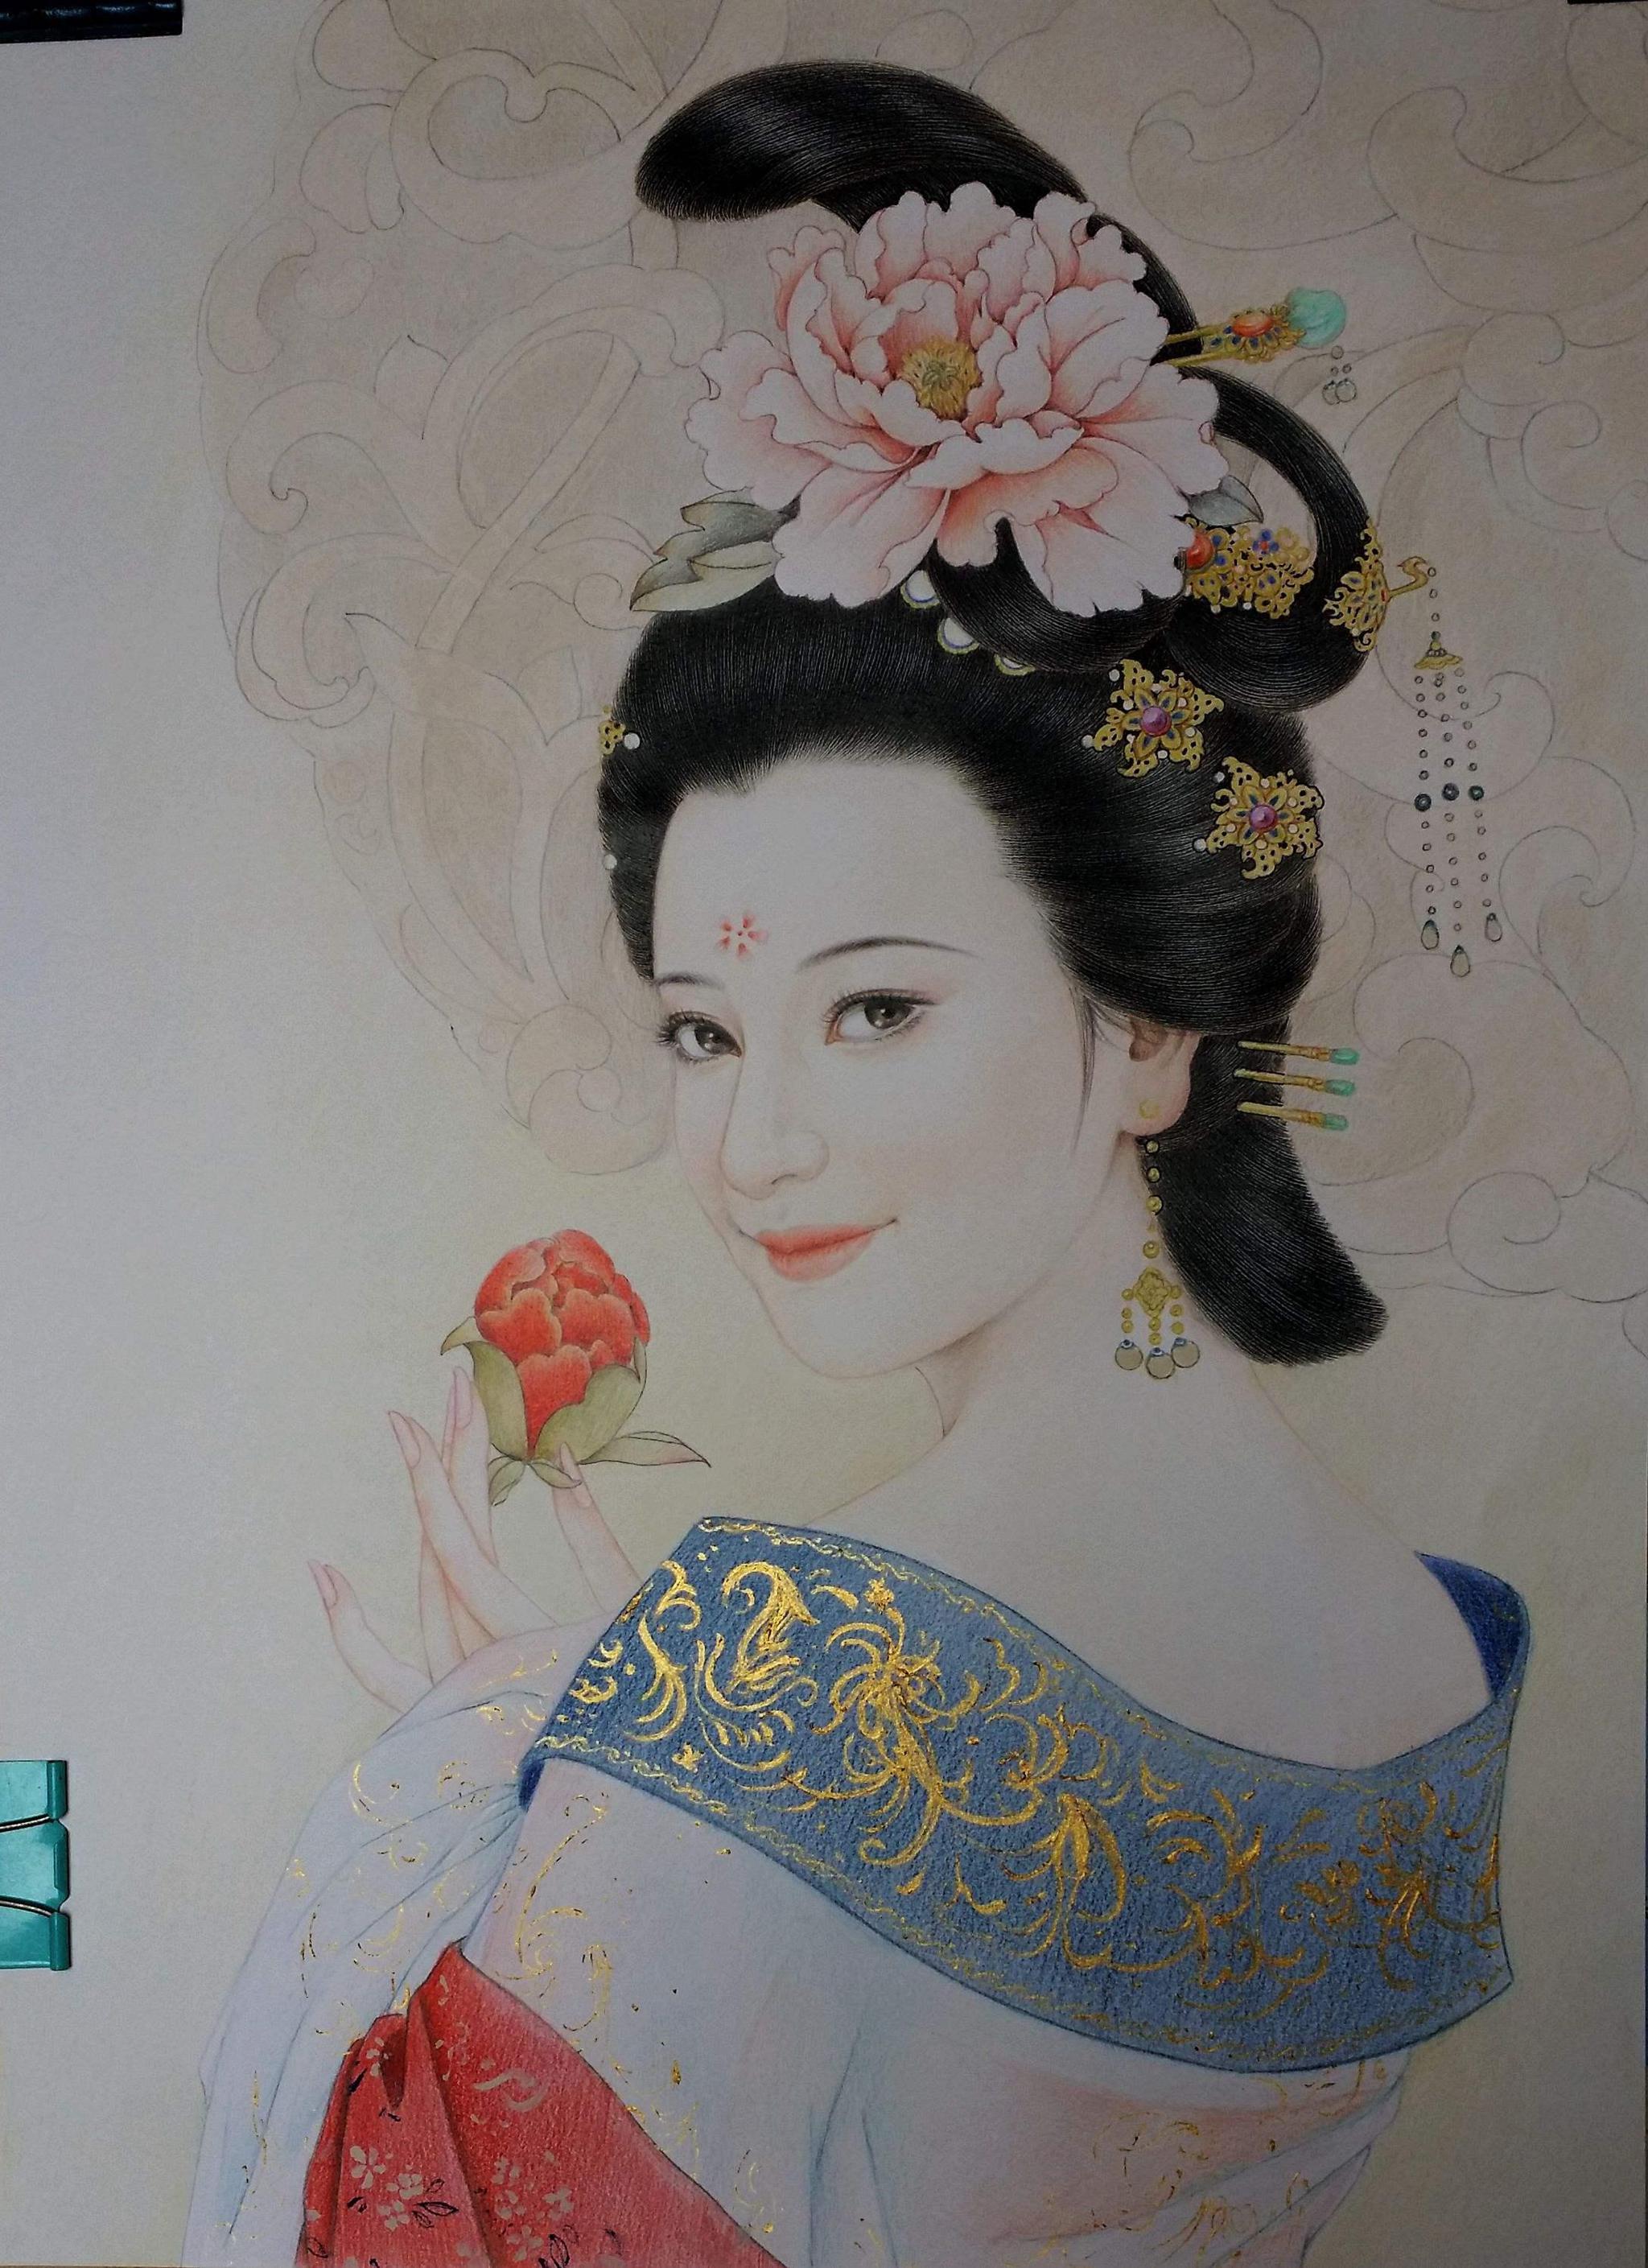 宋朝也有过一位杨贵妃,她的传奇故事并不亚于唐朝杨贵妃